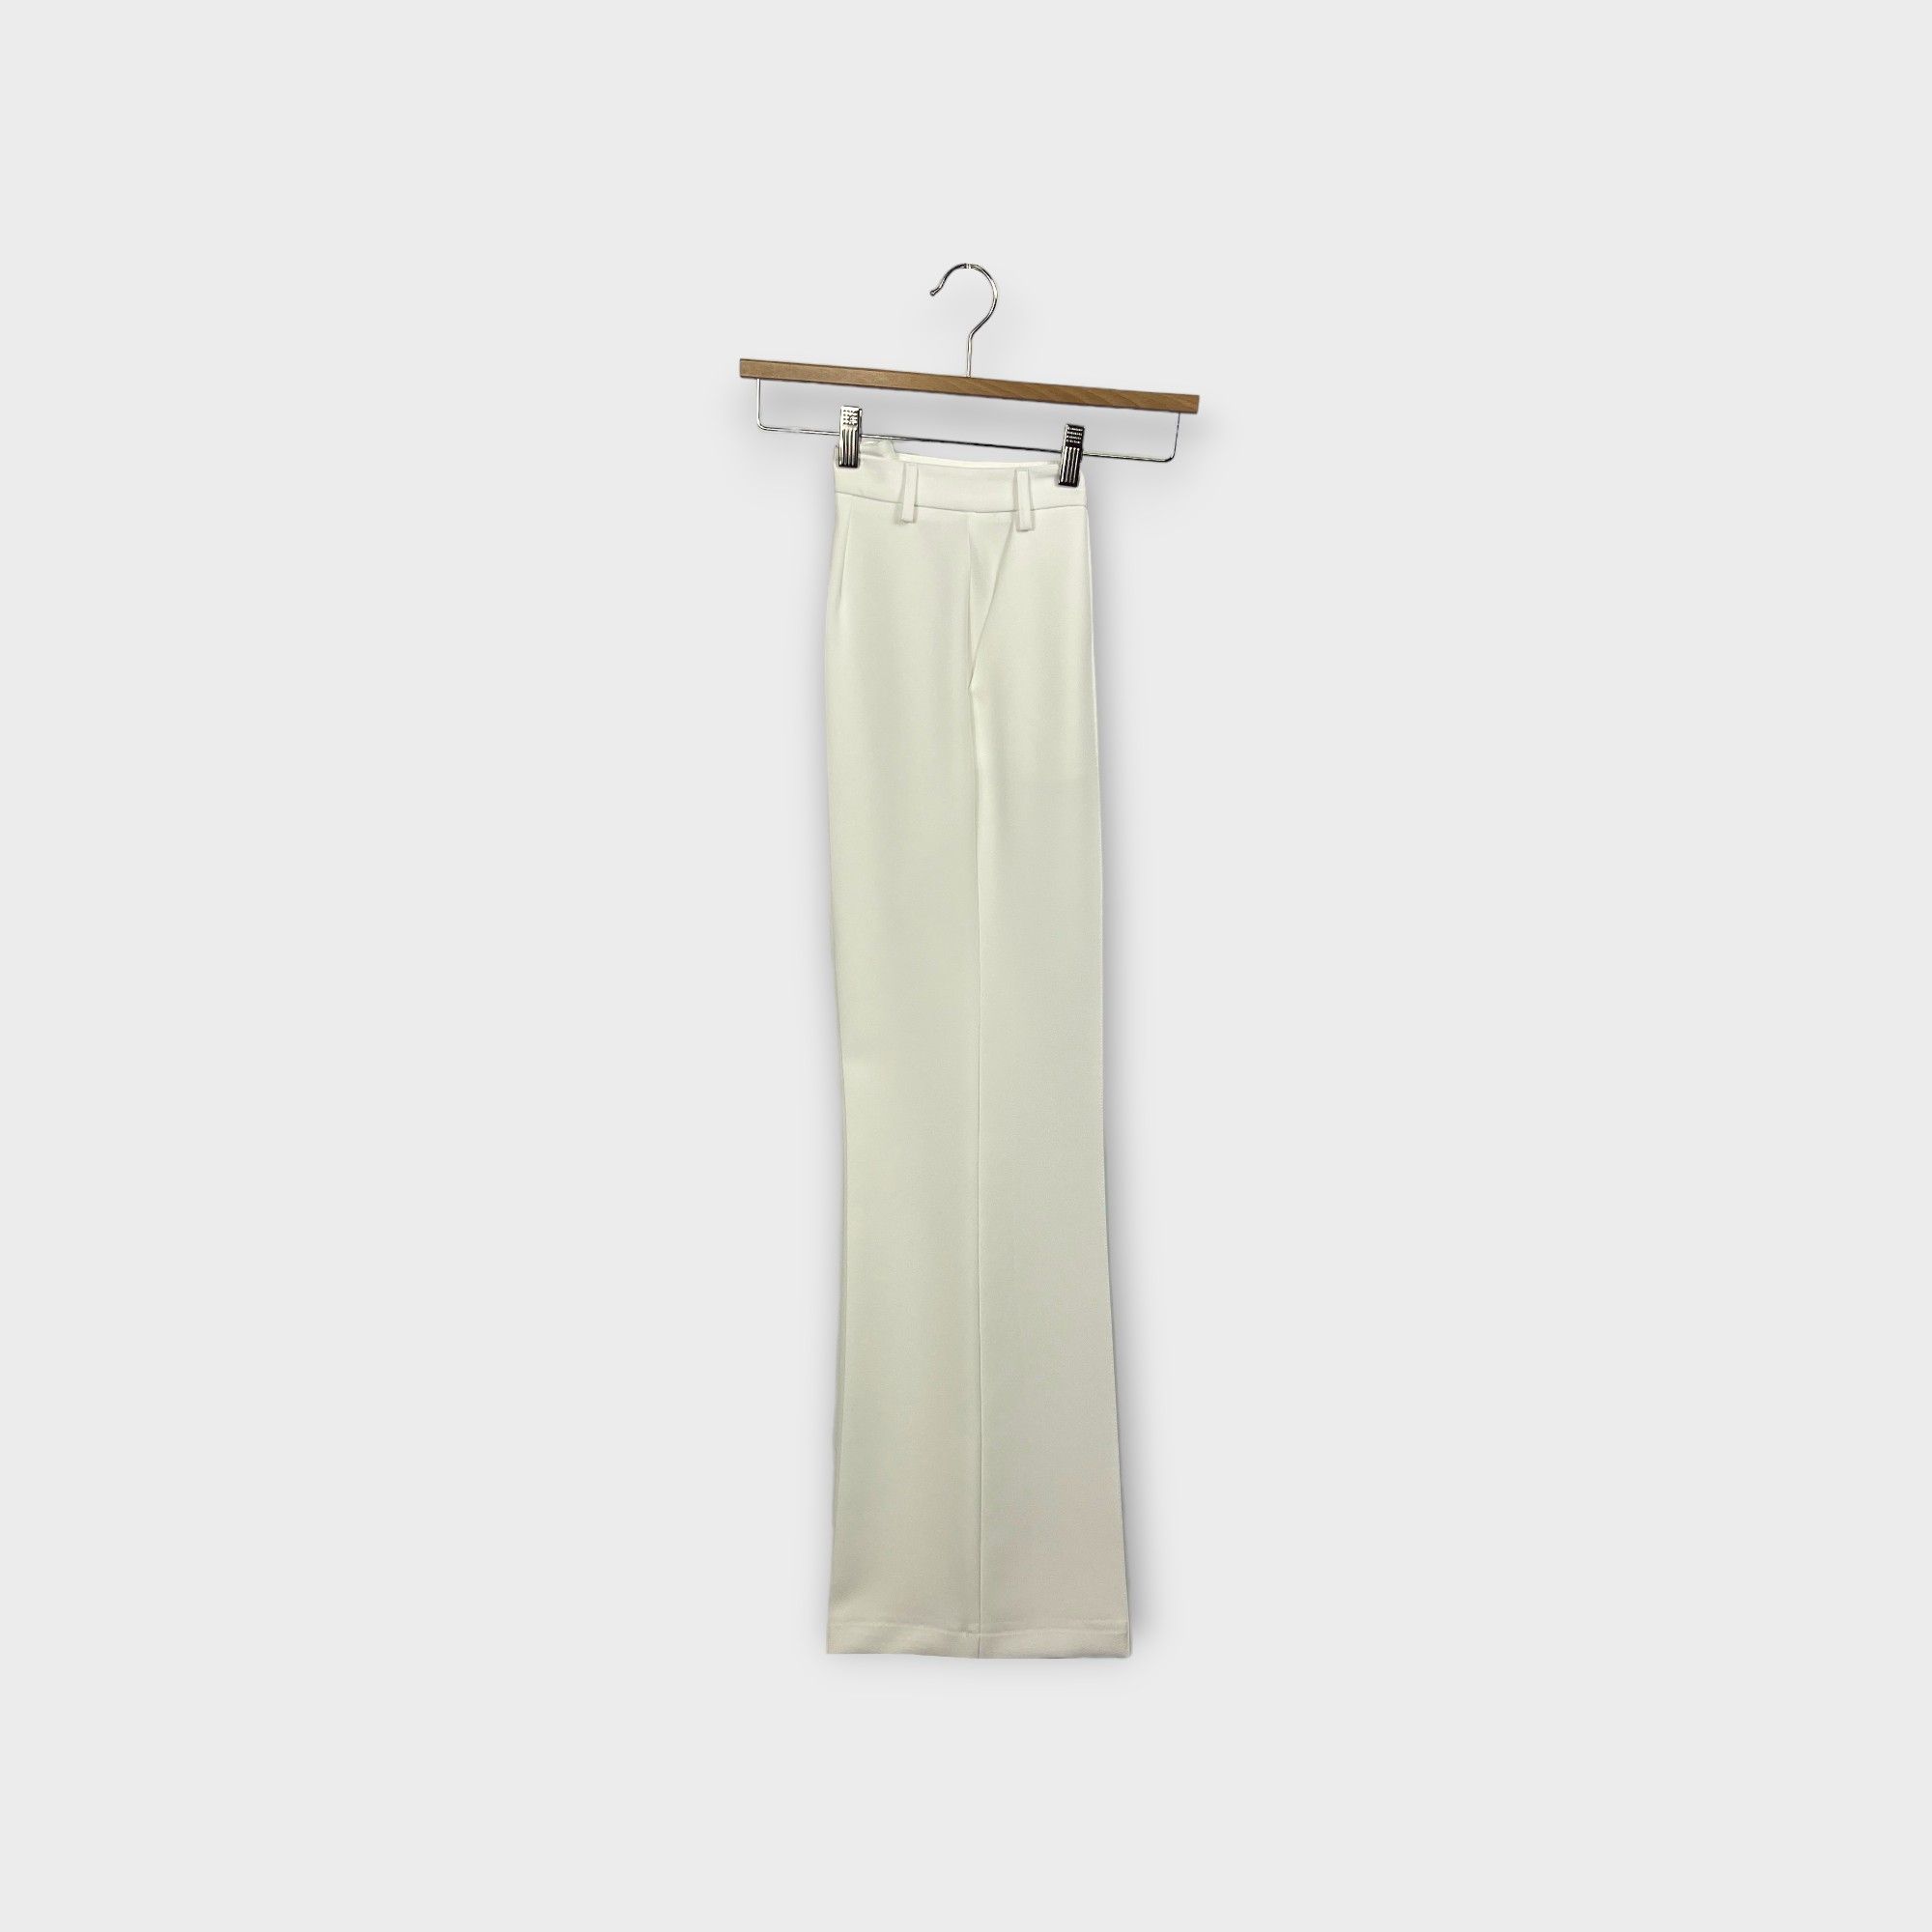 images/virtuemart/product/HELLEH Pantaloni donna modello palazzo leggermente scampanato al fondo in tessuto tecnico colore bianco 1.jpg